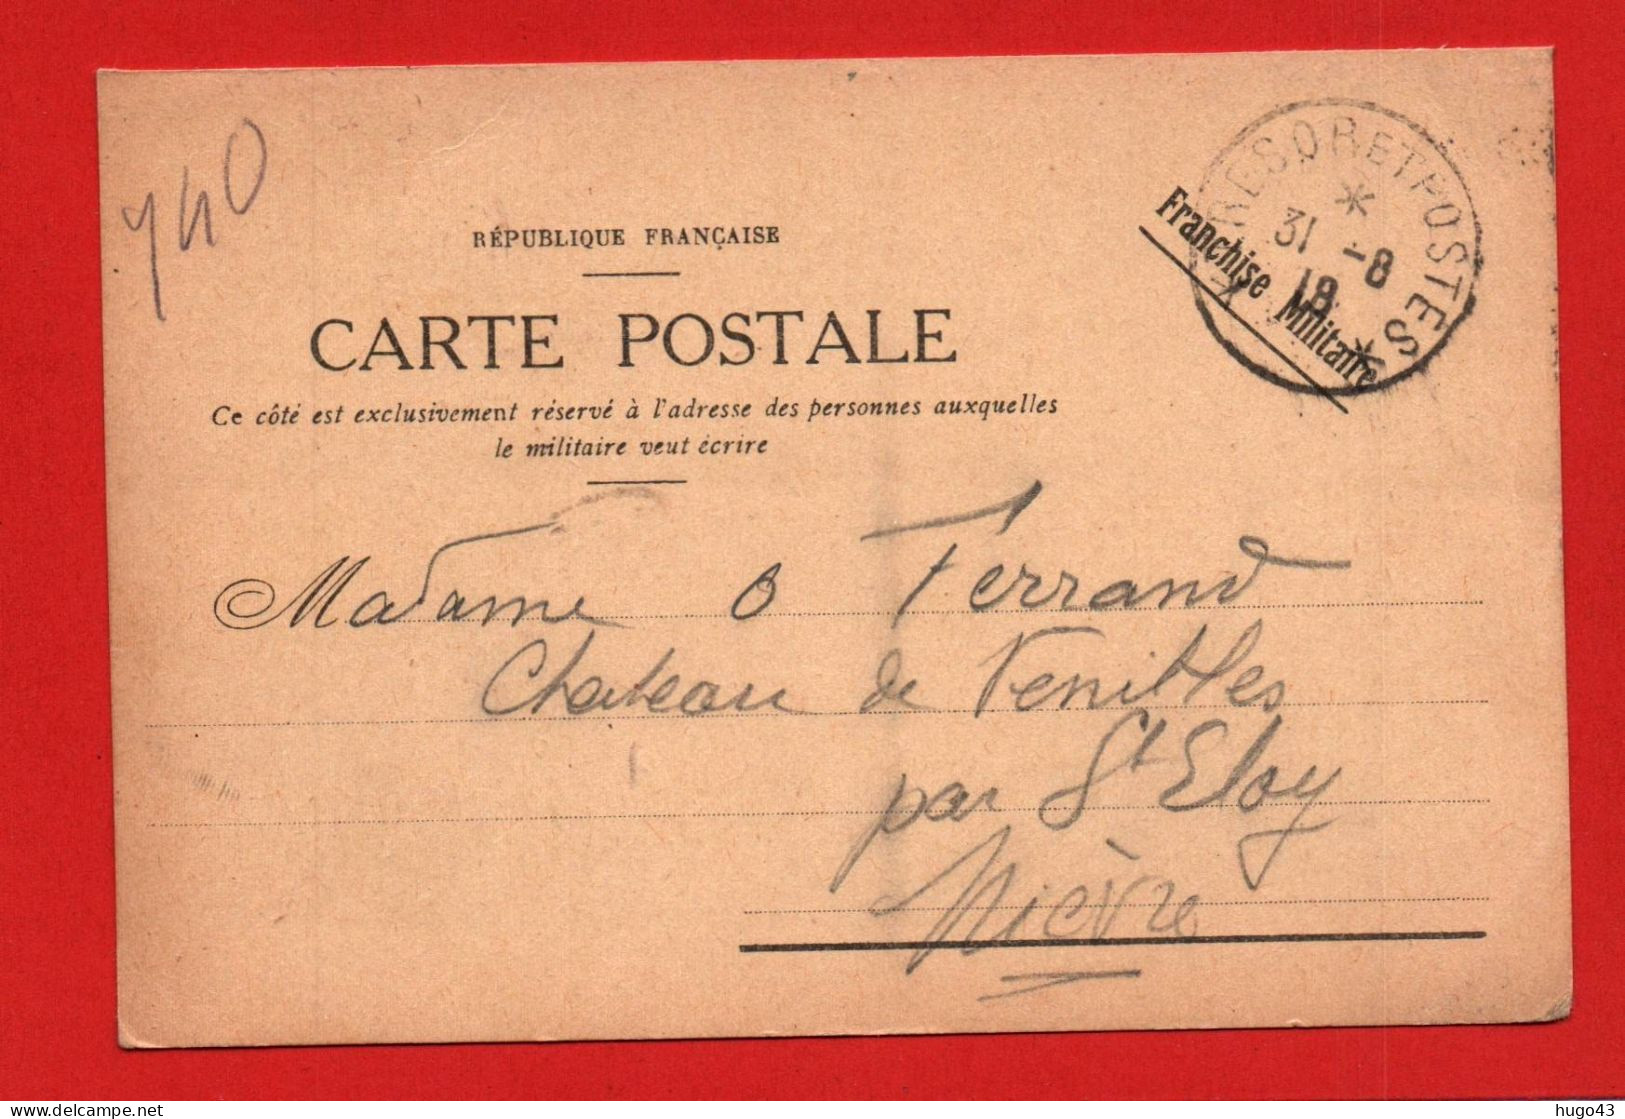 CARTE POSTALE FRANCHISE MILITAIRE - CACHET TRESOR ET POSTES LE 31 /08 /1918 - Naval Post